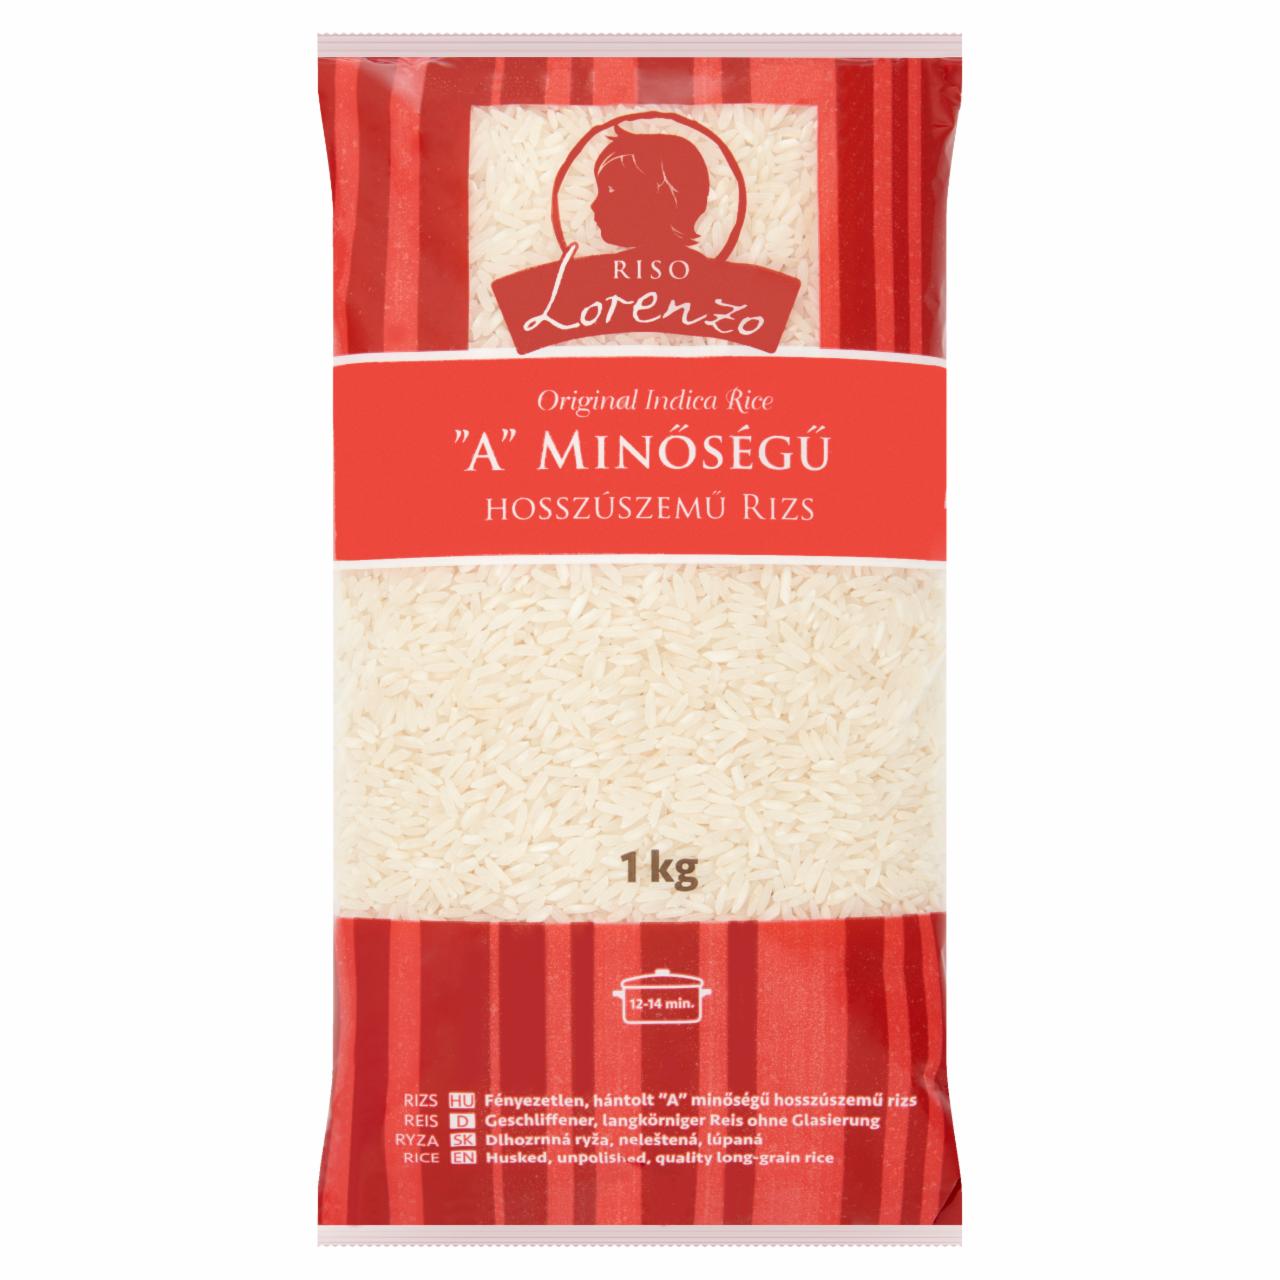 Képek - Lorenzo 'A' minőségű hosszúszemű rizs 1 kg